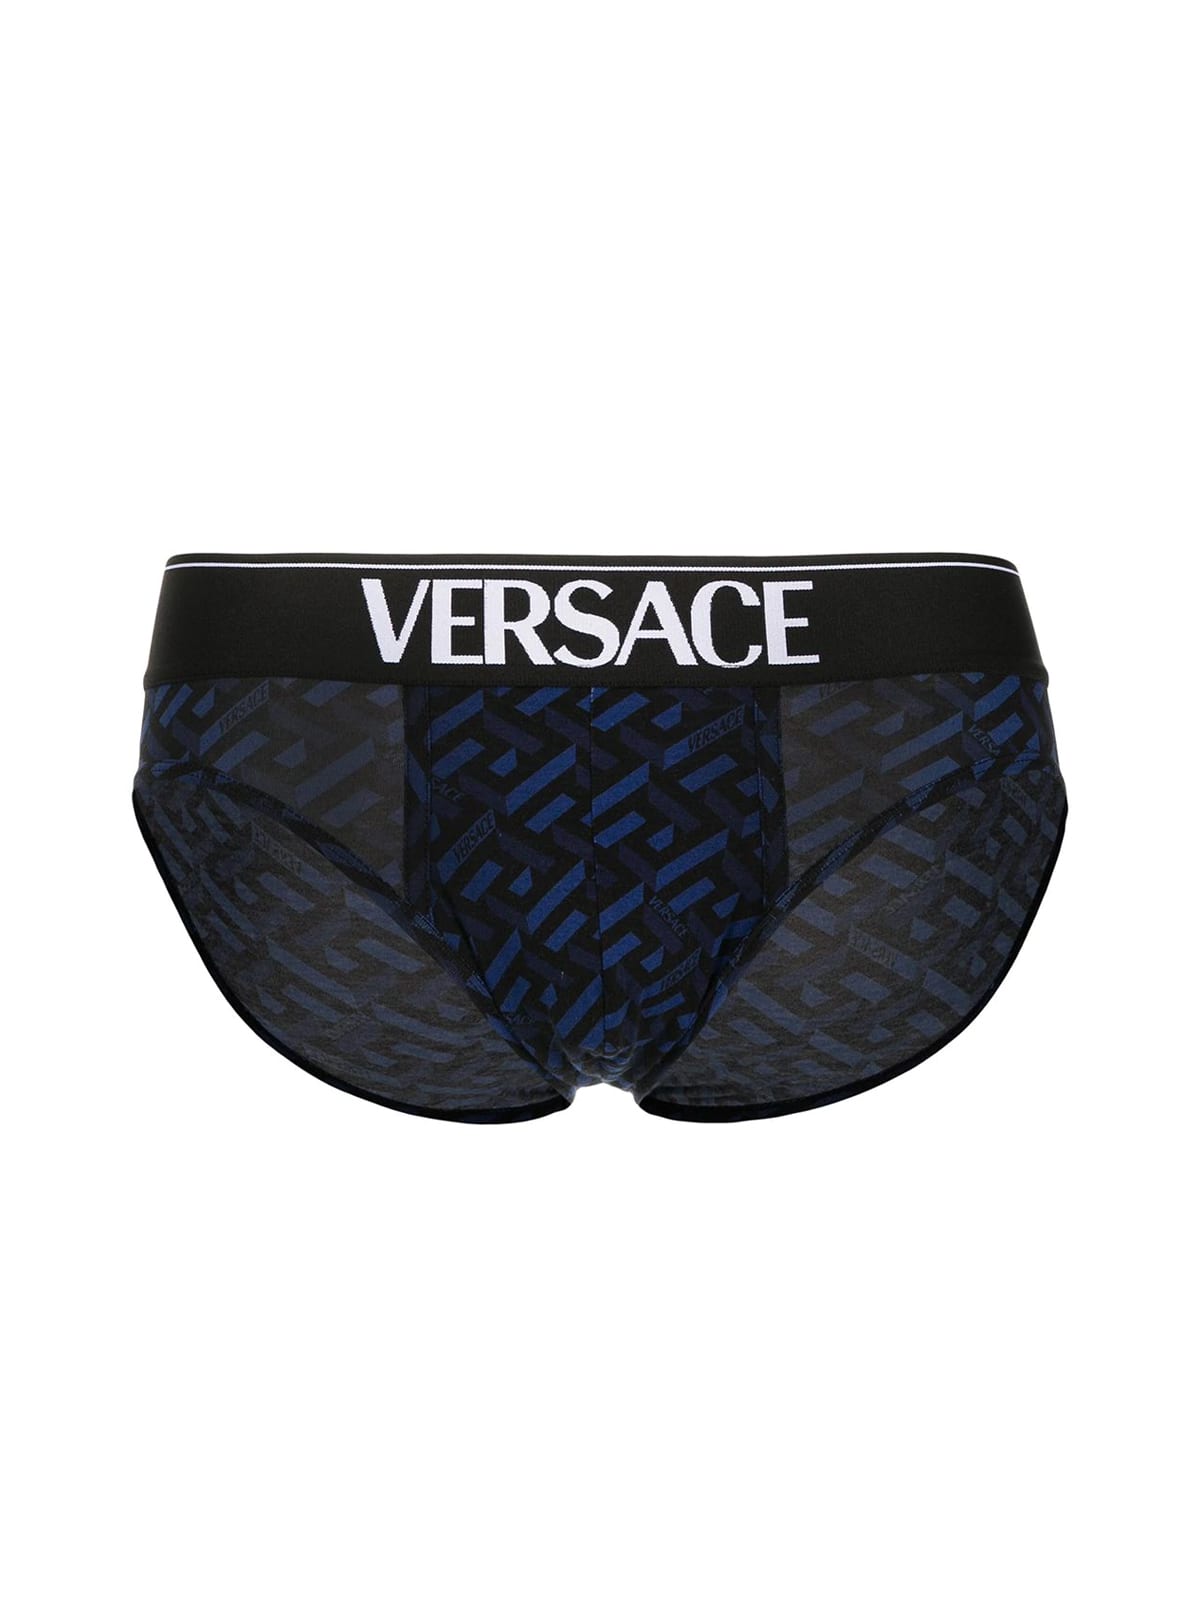 Versace Jersey Cotton Underwear Slip